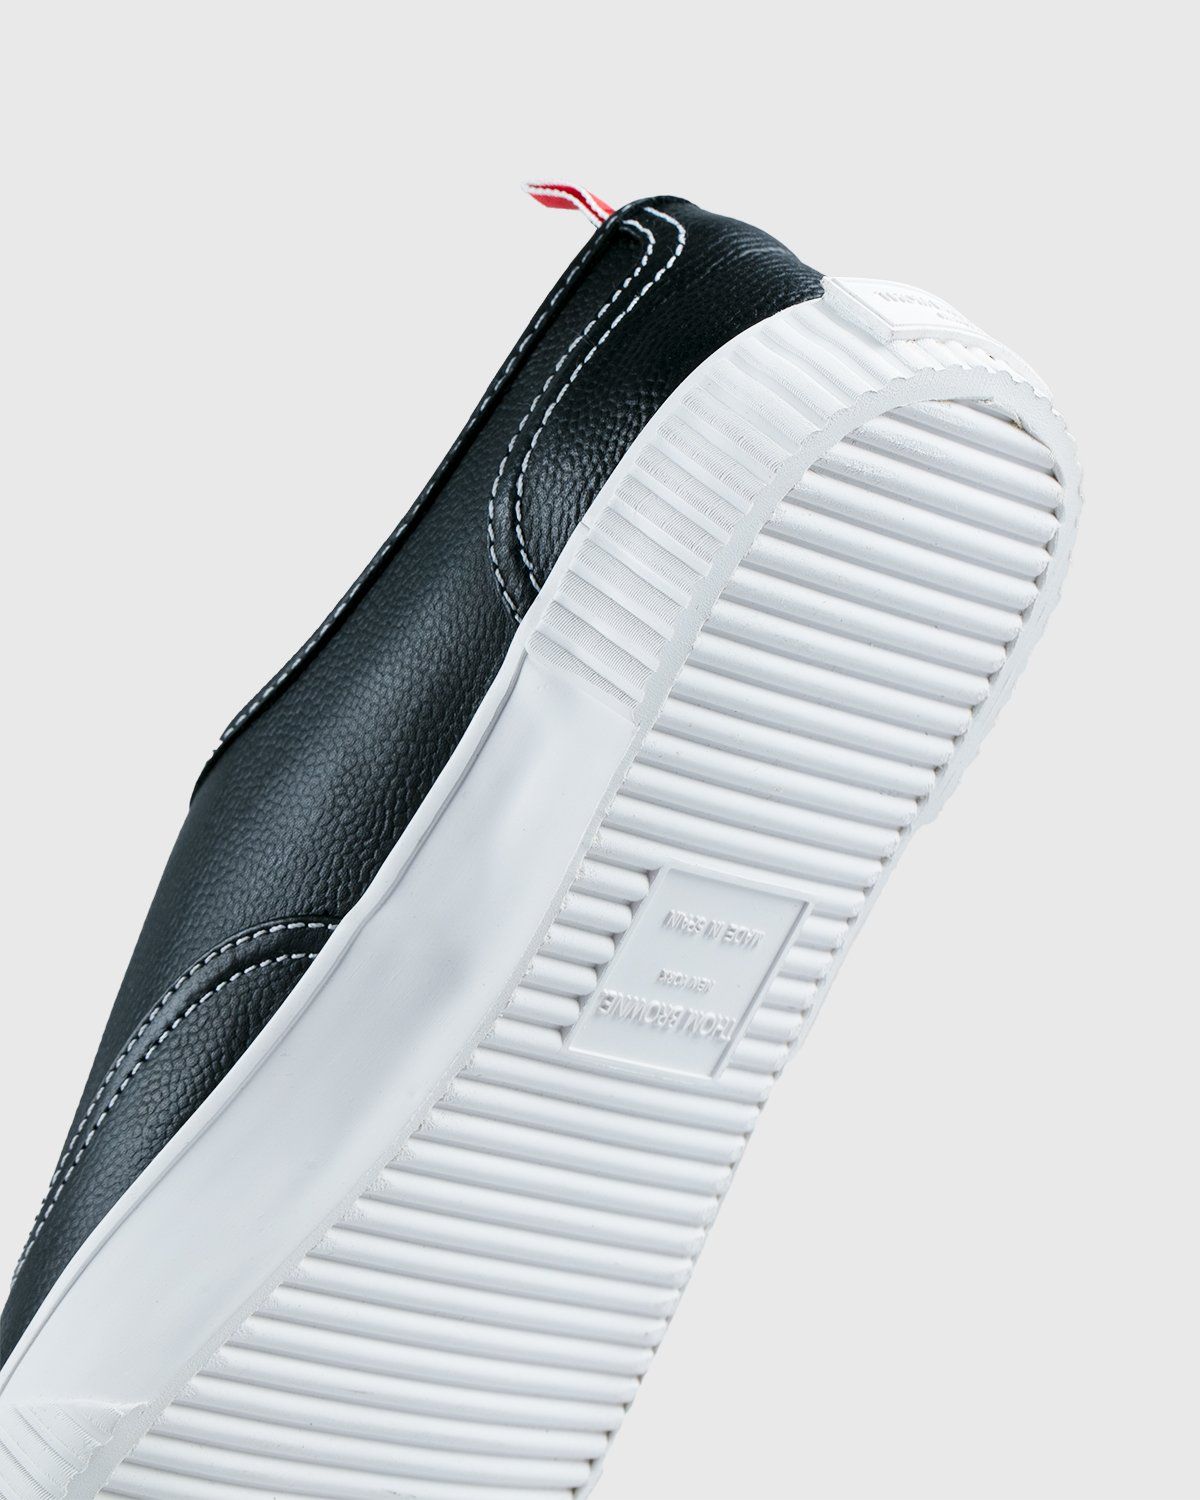 Thom Browne x Highsnobiety – Men's Heritage Sneaker Grey - Low Top Sneakers - Grey - Image 5